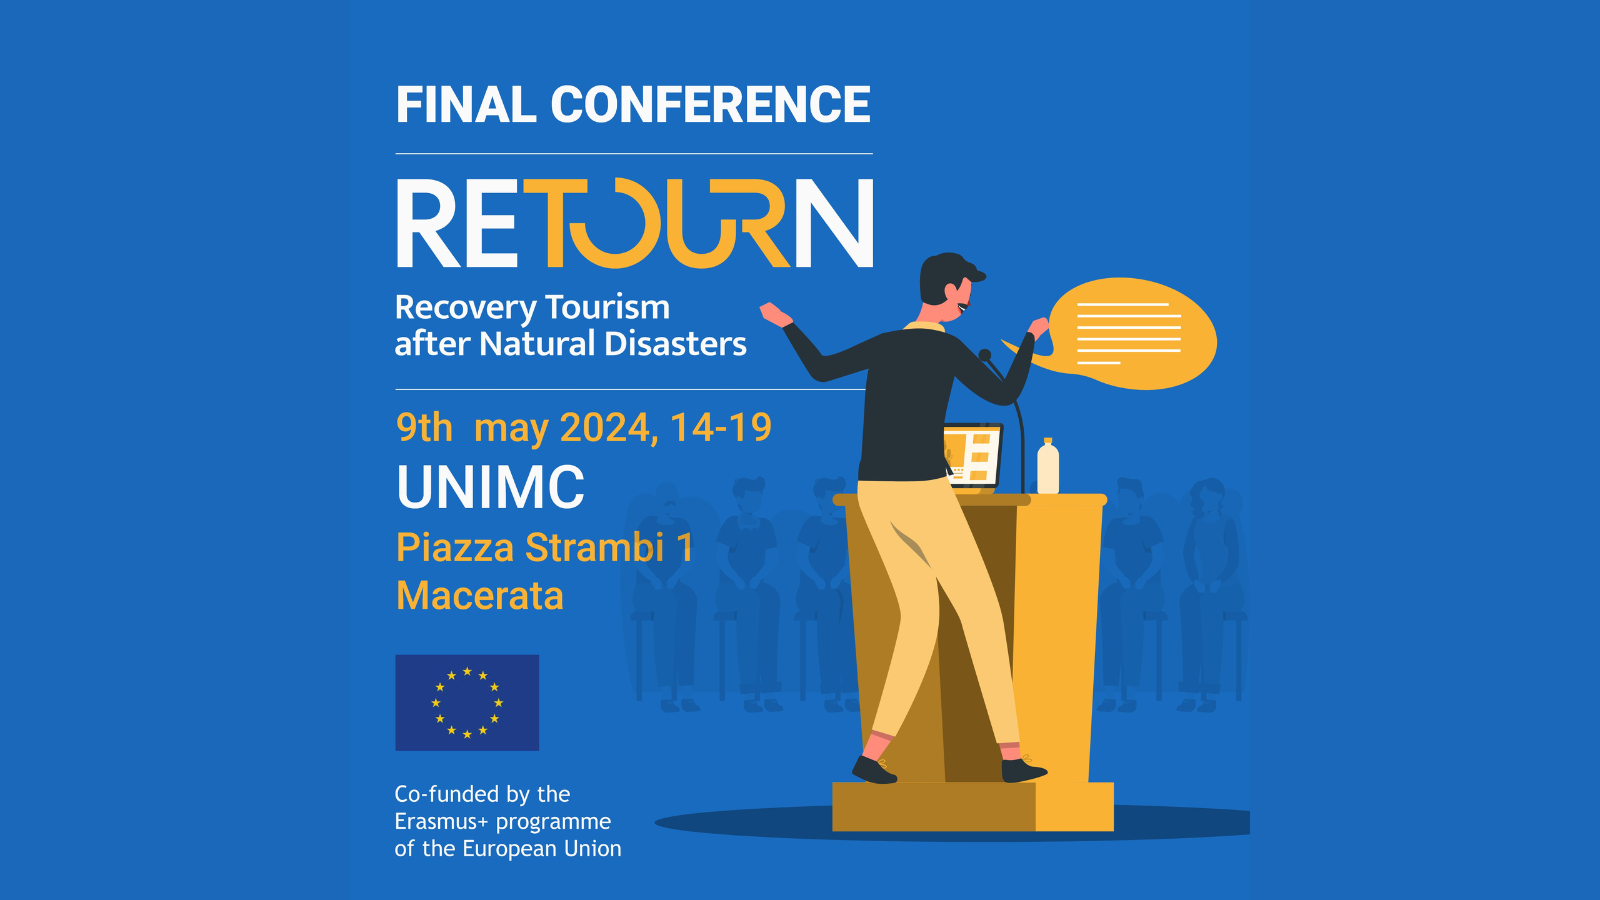 UniMC in prima linea sul turismo post disastro naturale: conferenza finale del progetto RETOURN 